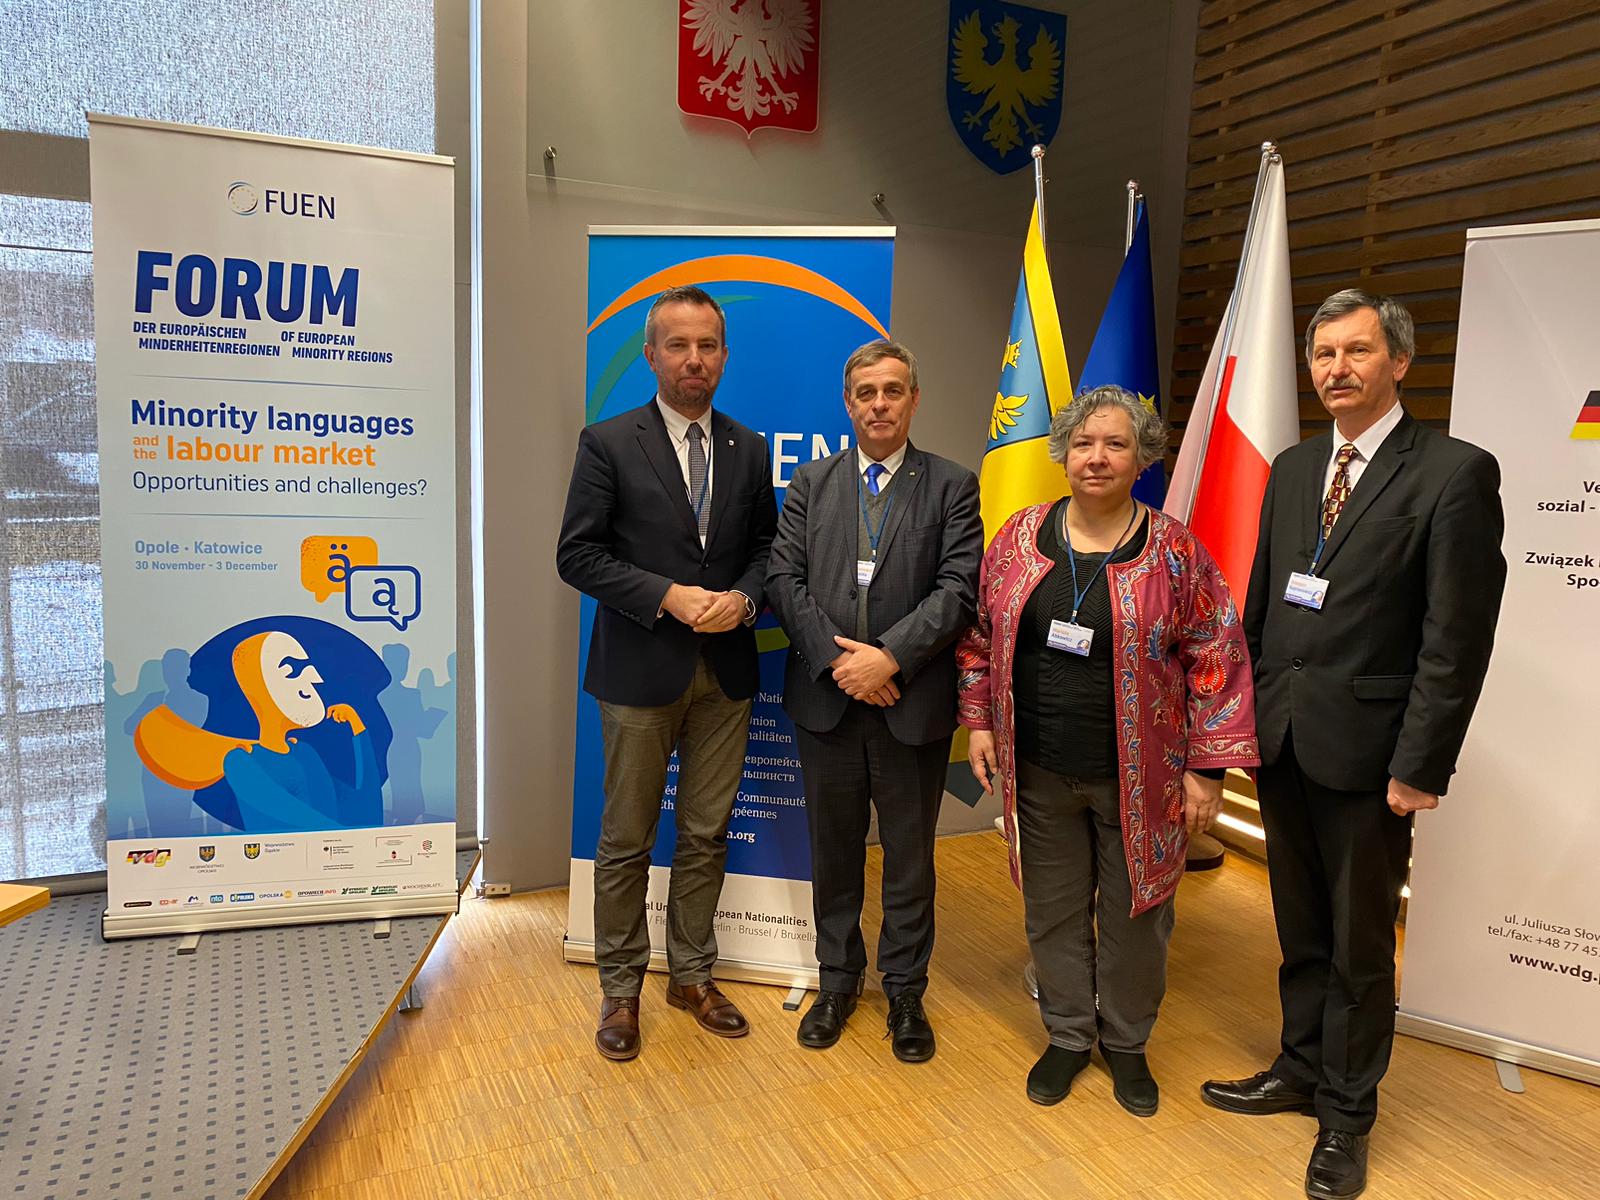 Директор ПНІ взяв участь у Форумі європейських меншинних регіонів